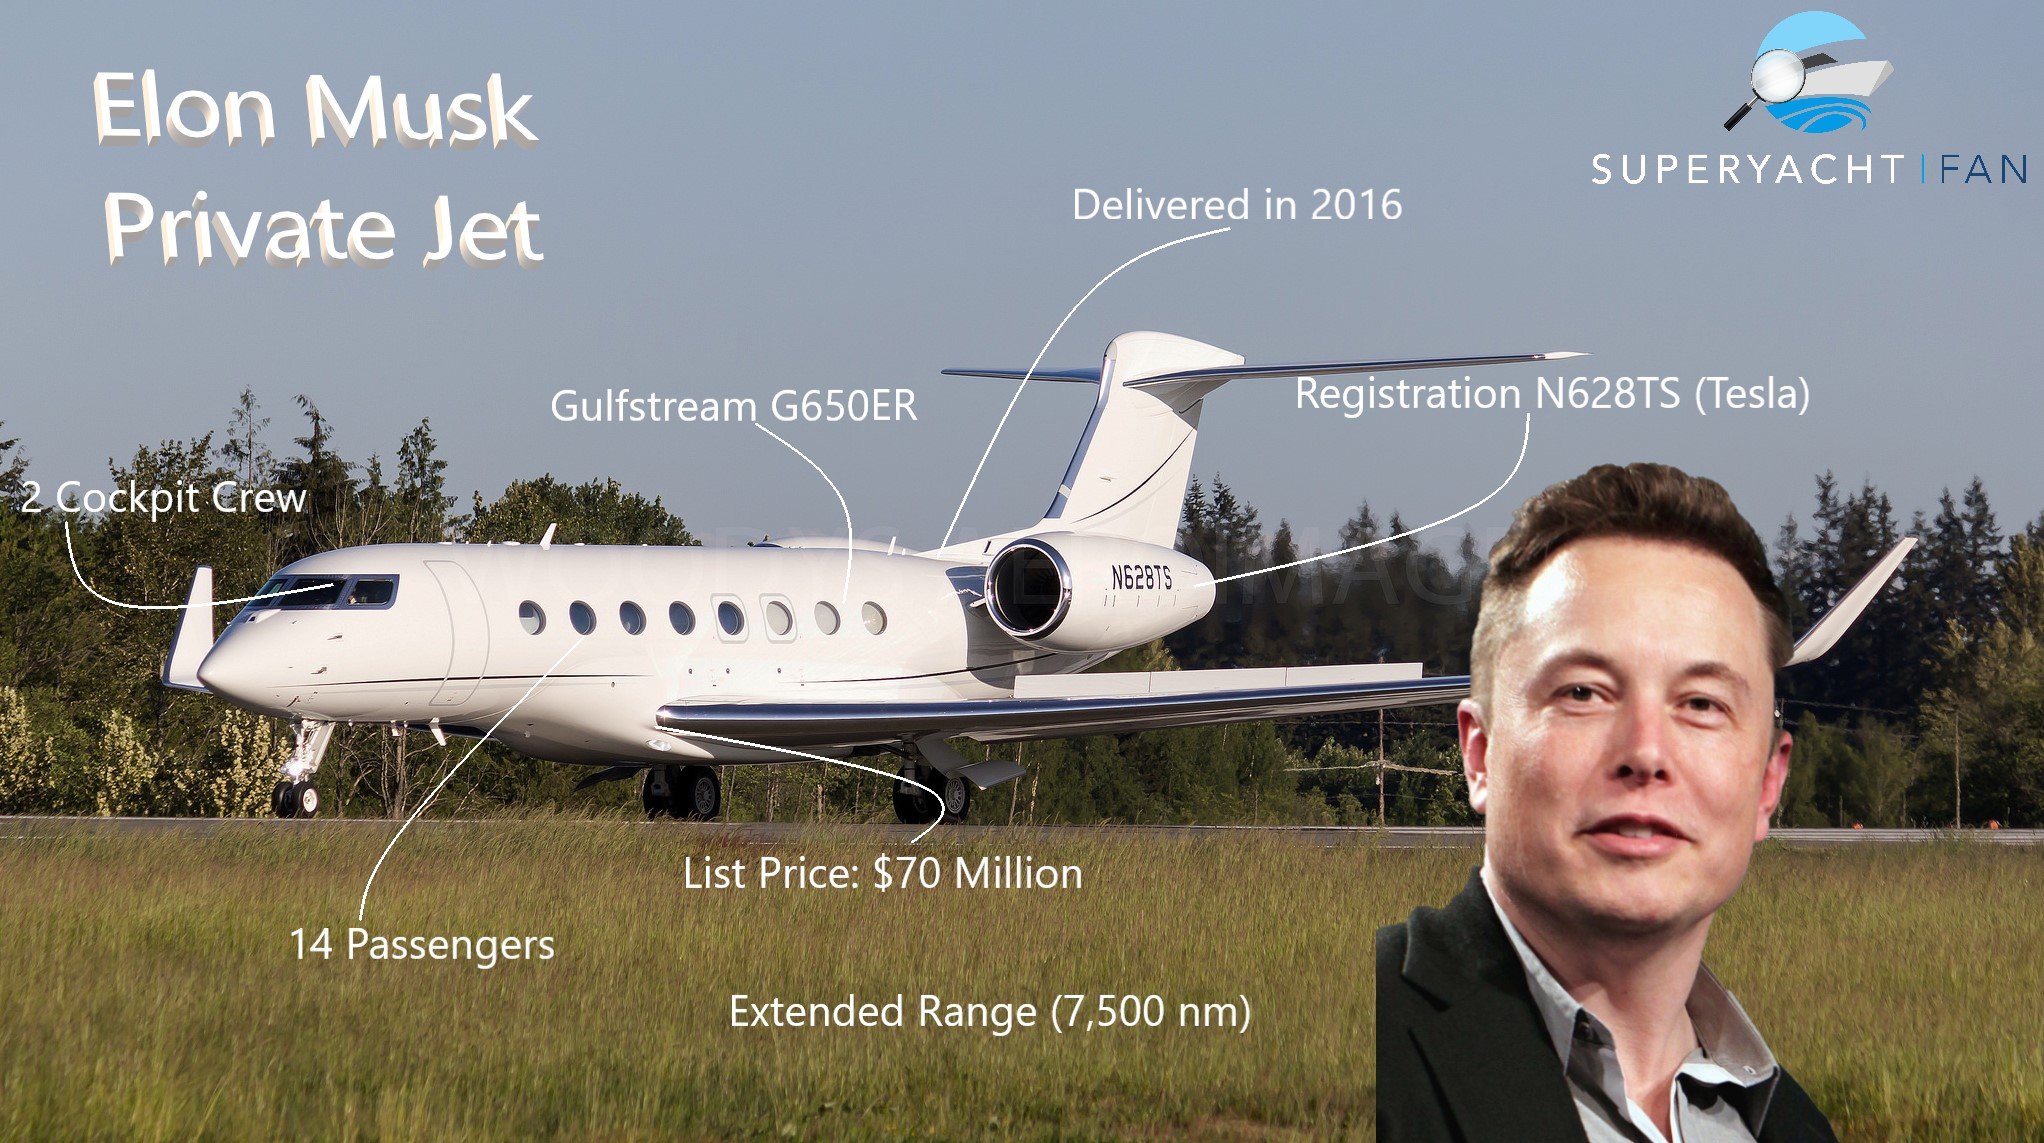 Jet privé Elon Musk N628TS